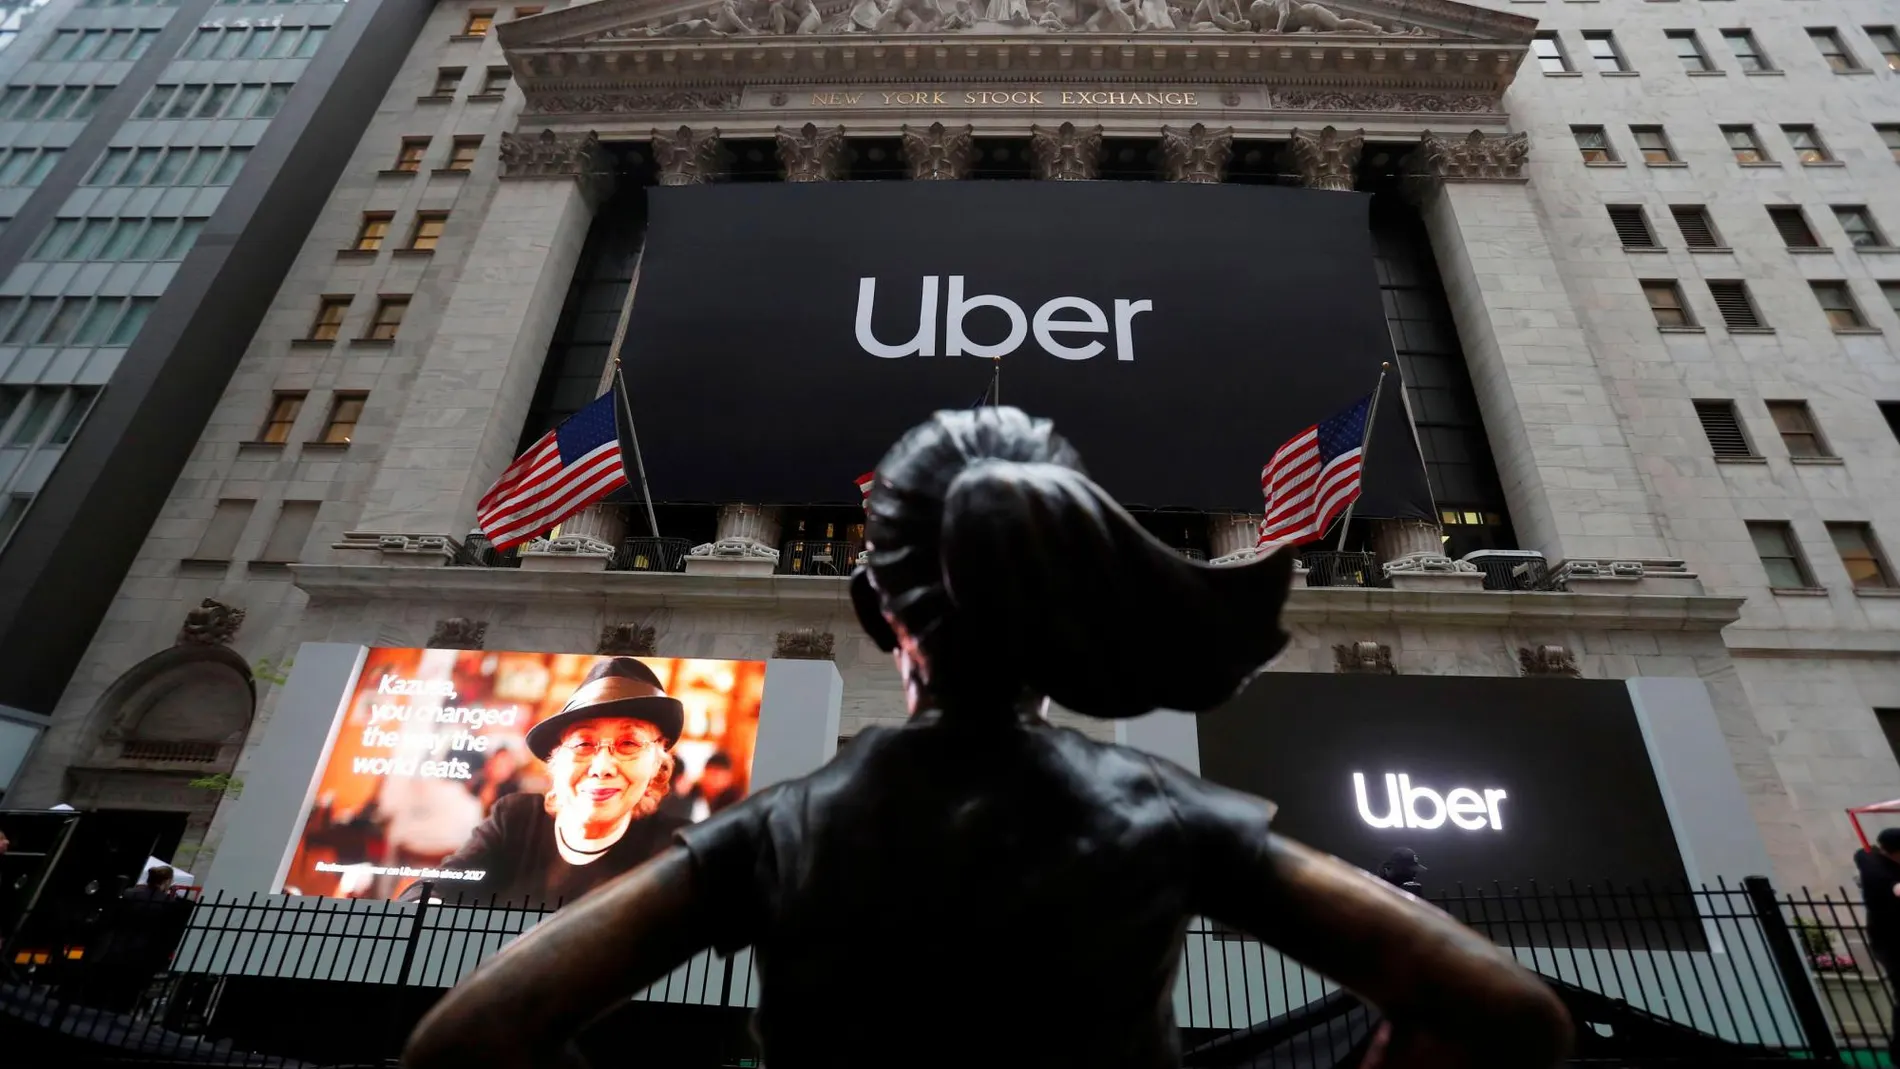 La Niña Sin Miedo de Estados Unidos posa frente al anuncio de que Uber asalta la bolsa de Estados Unidos